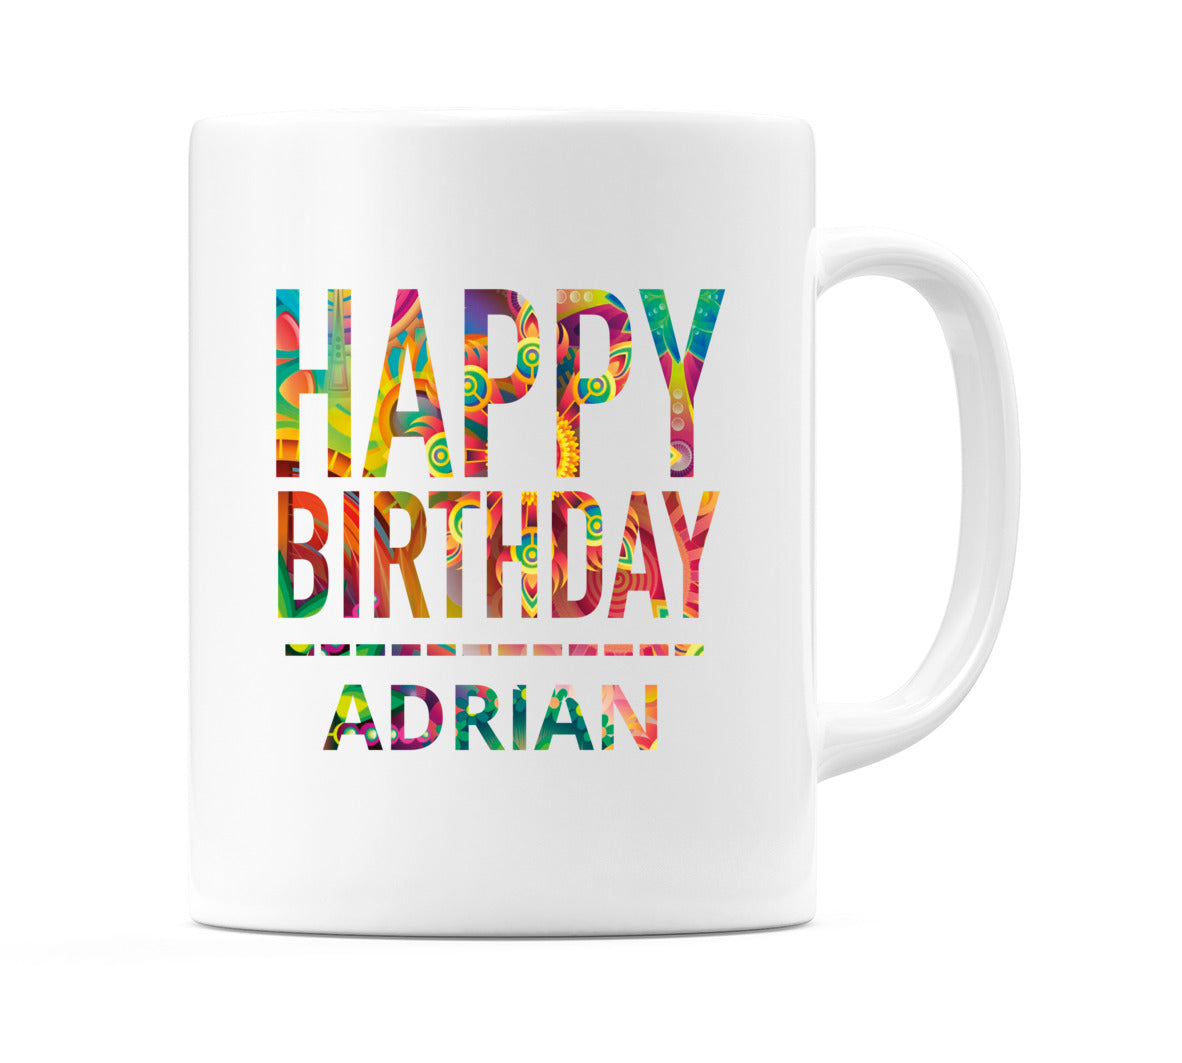 Happy Birthday Adrian (Tie Dye Effect) Mug Cup by WeDoMugs